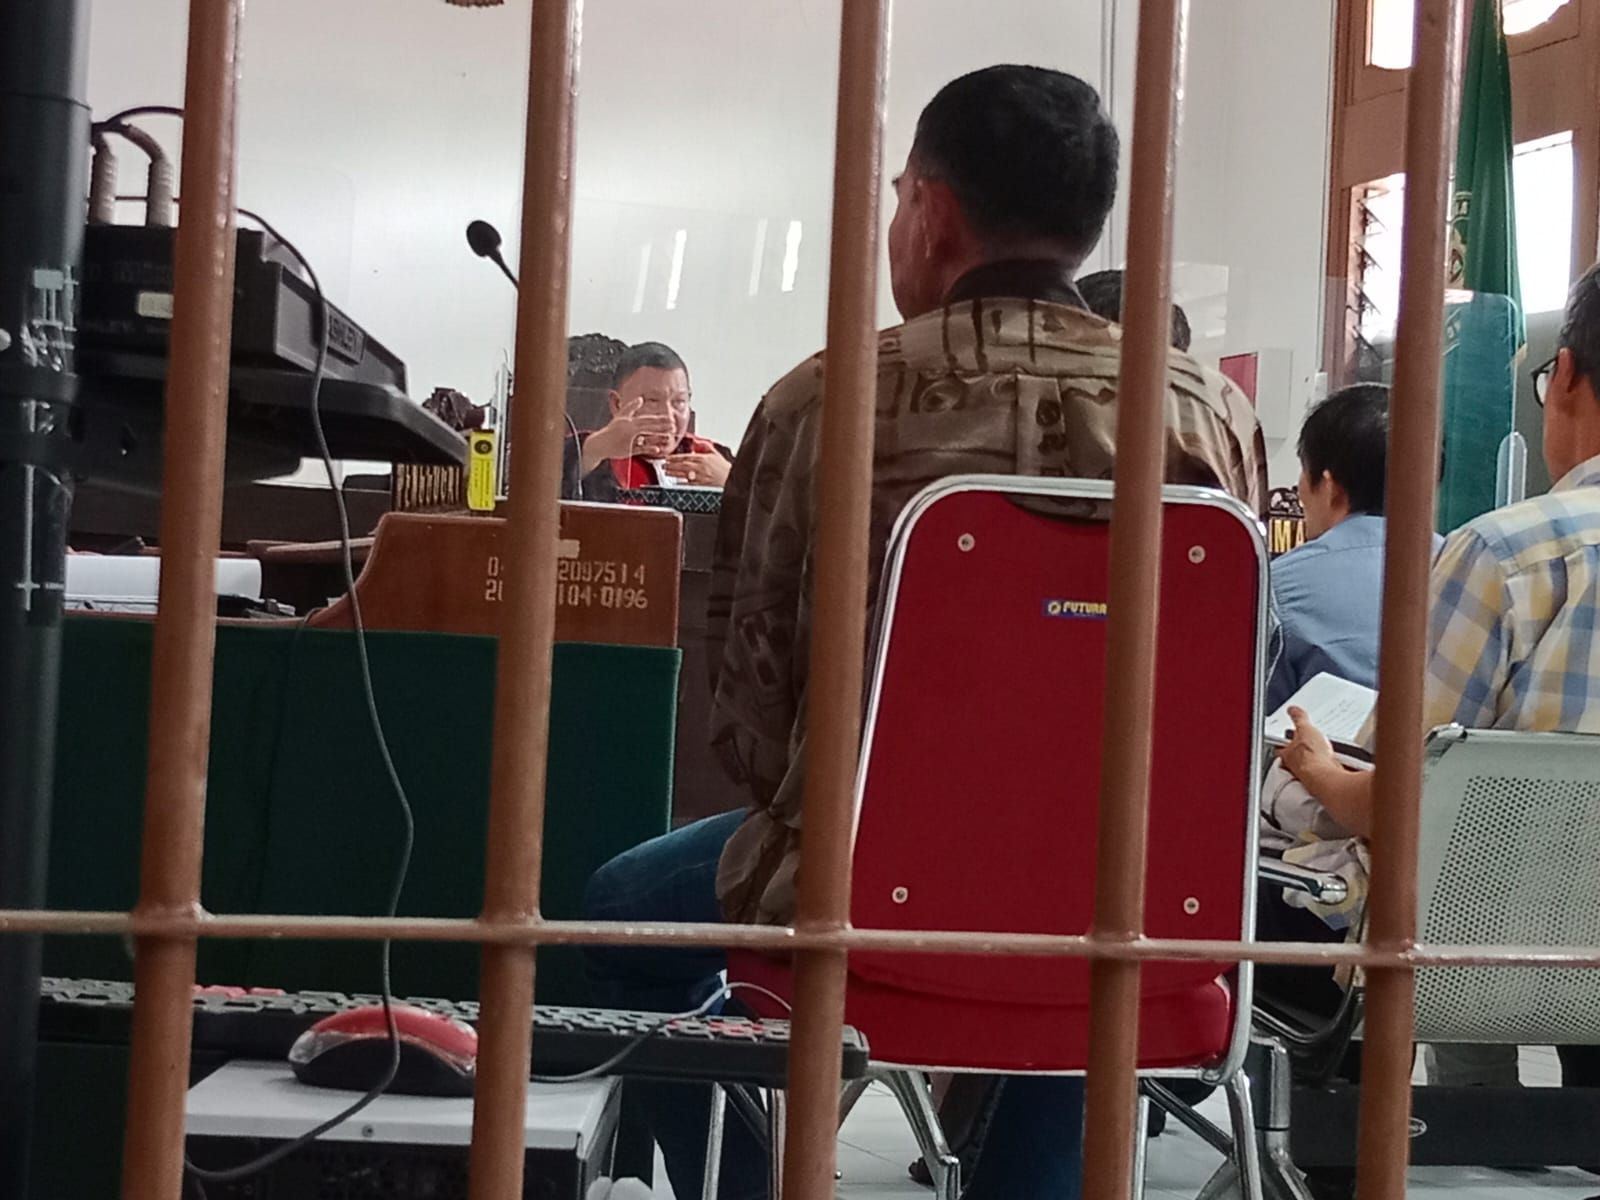 Pengadilan Negeri (PN) Bandung kembali menyidangkan Perusakan Bangunan di Jalan Surya Sumantri, hadirkan 7 saksi, salah satu saksi sebut bangunan milik terdakwa menyalahi aturan. SIdang digelar di ruang 6 PN Bandung Selasa 7 Februari 2023